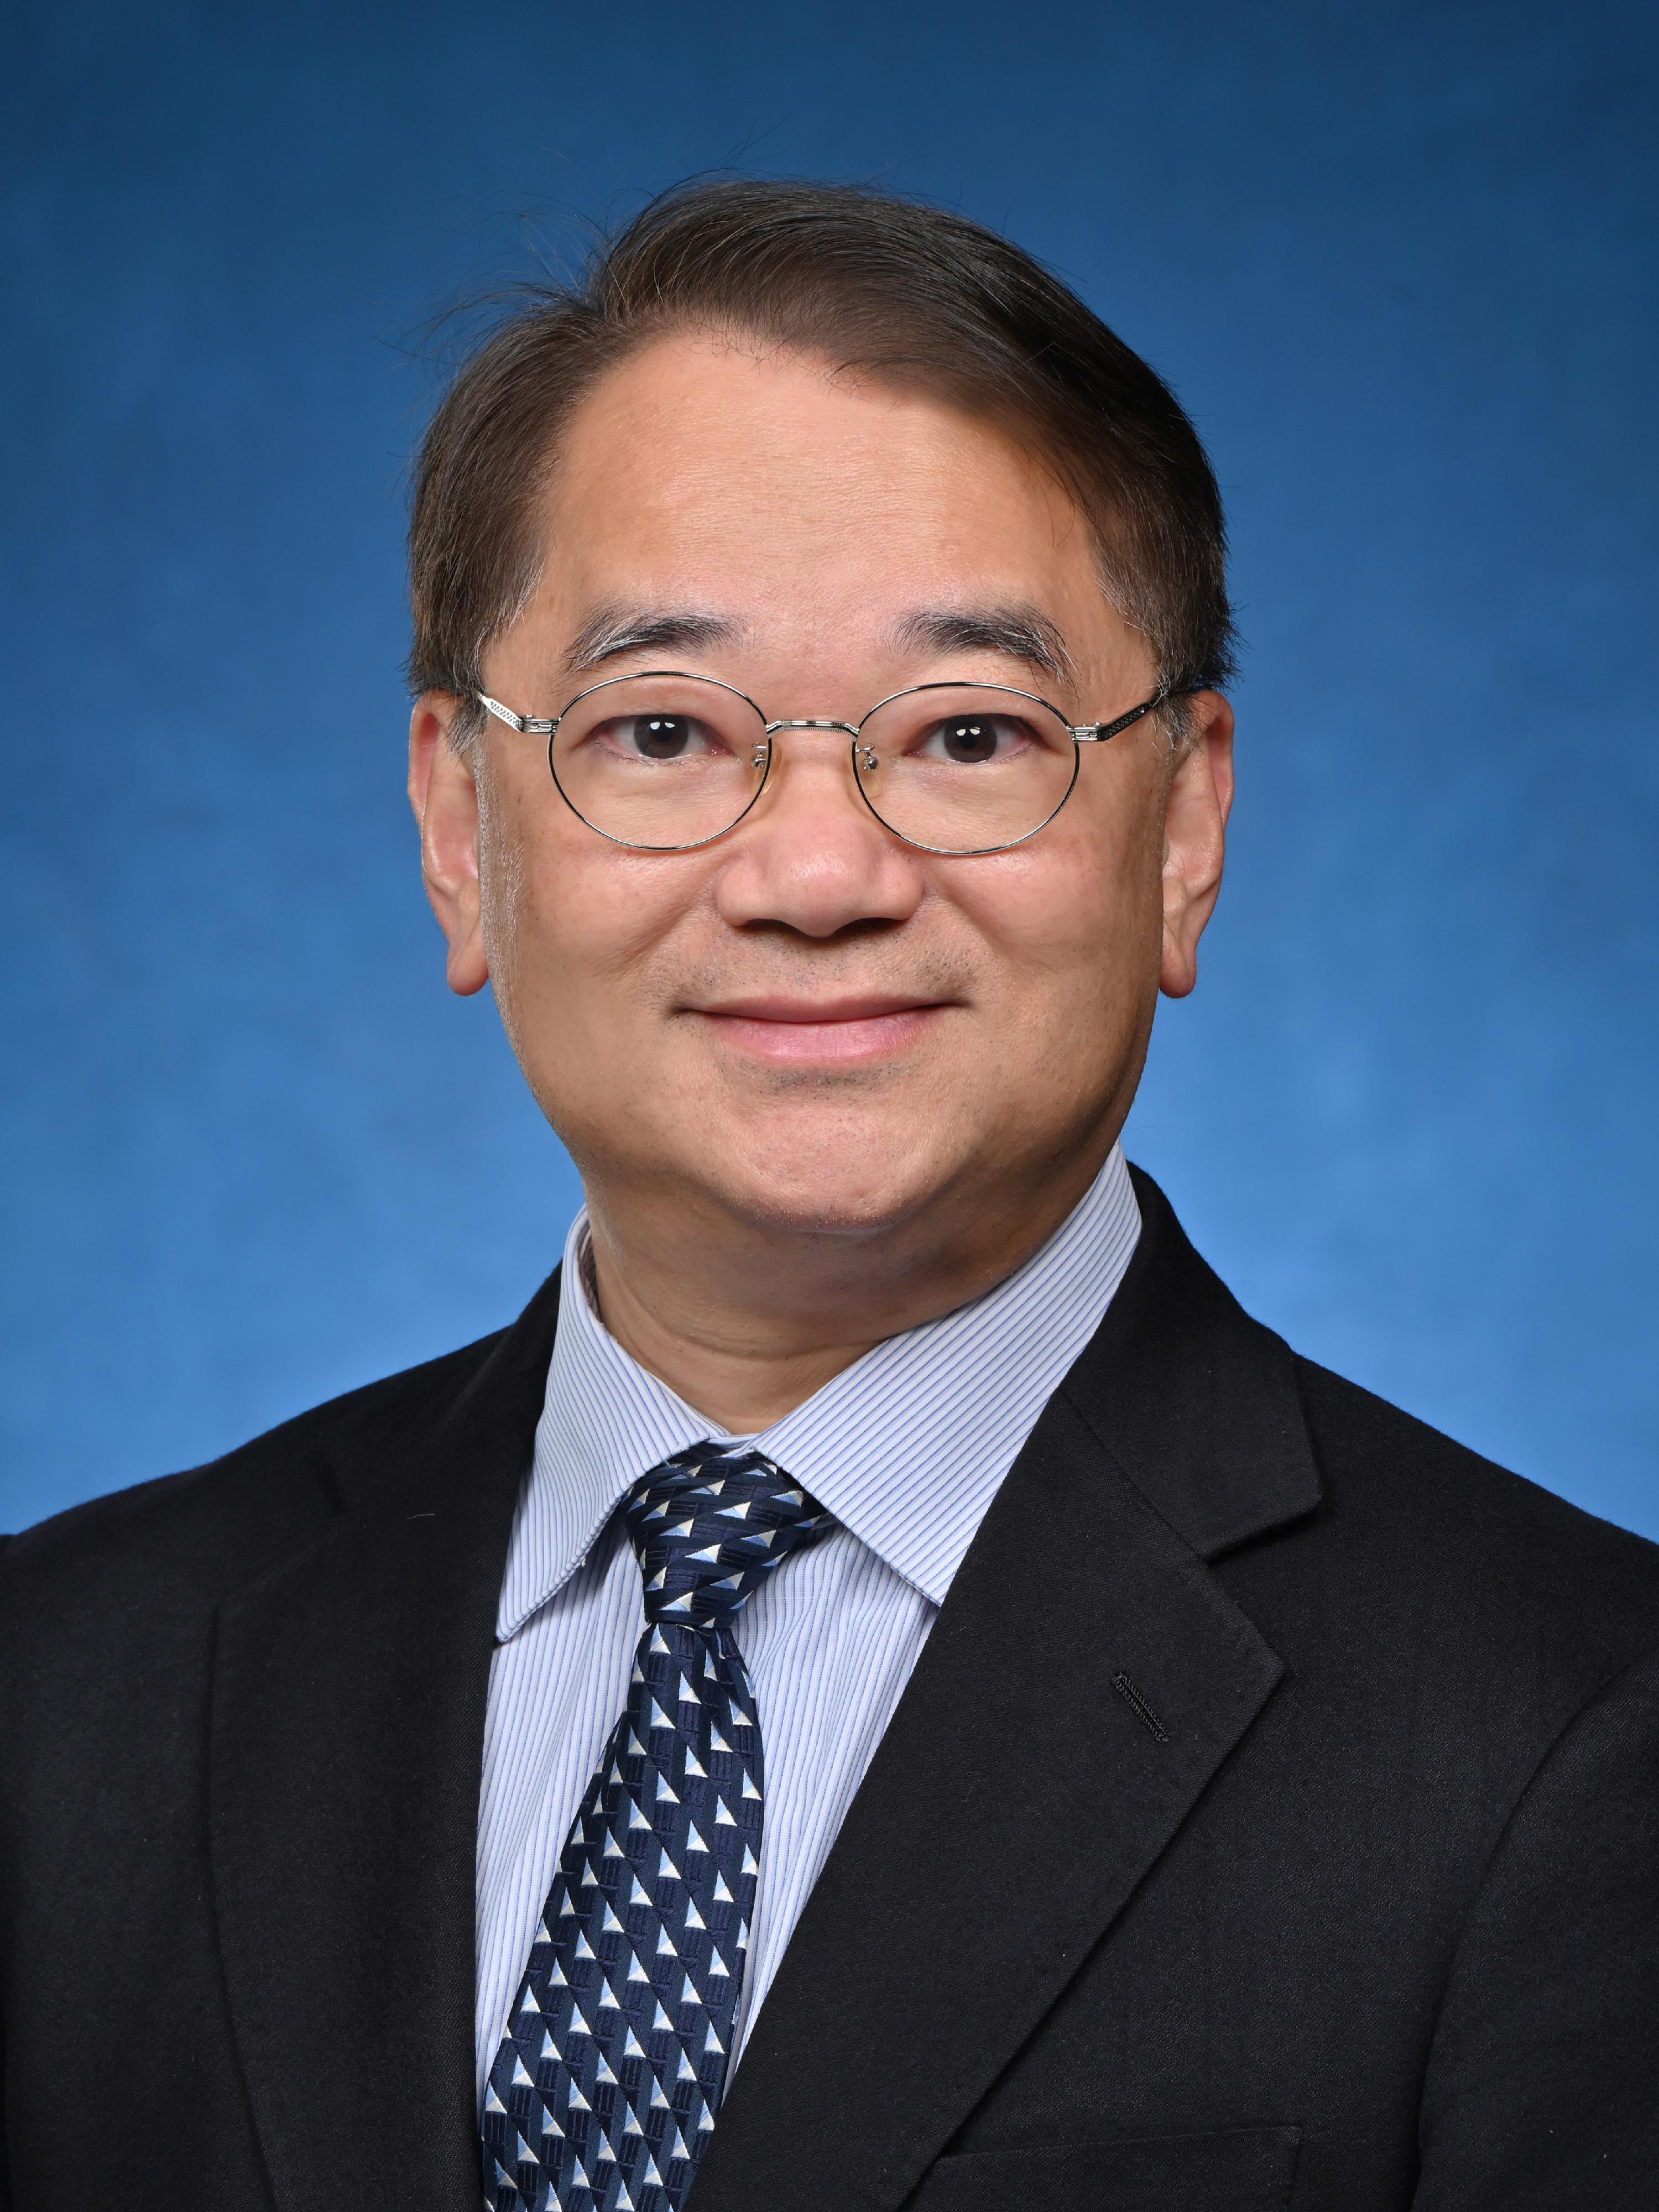 環境保護署副署長徐浩光博士將於二○二三年三月二十九日出任環境保護署署長。